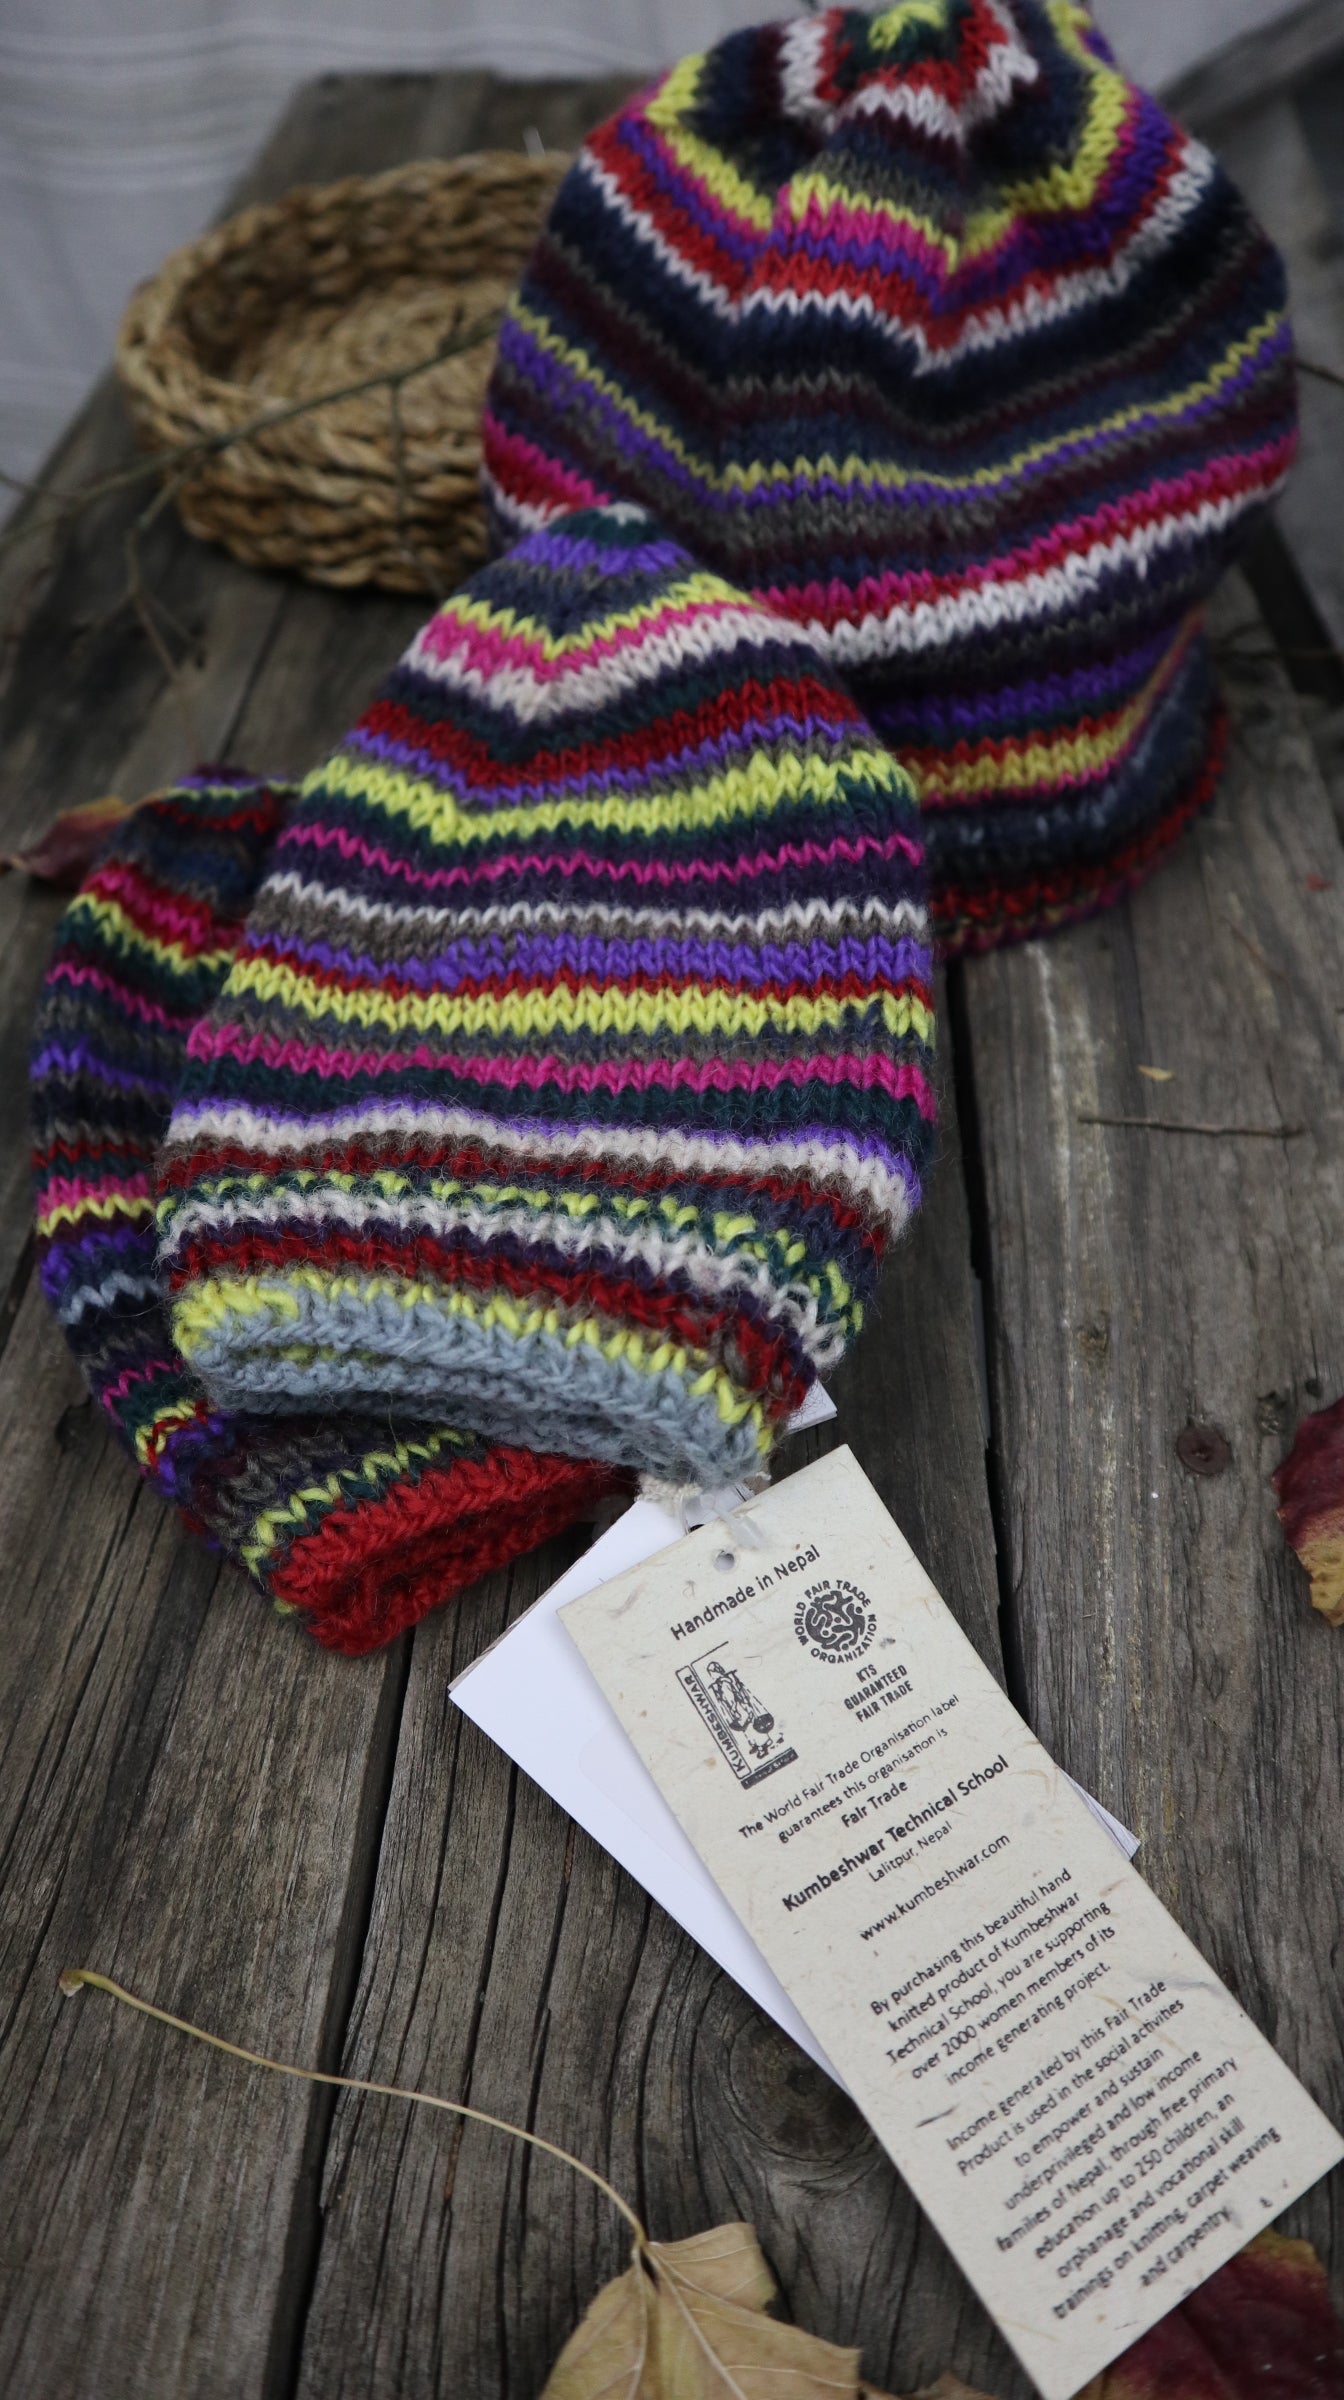 Fair Trade Ethical Woollen Beanie in a Striped Multi Coloured Design